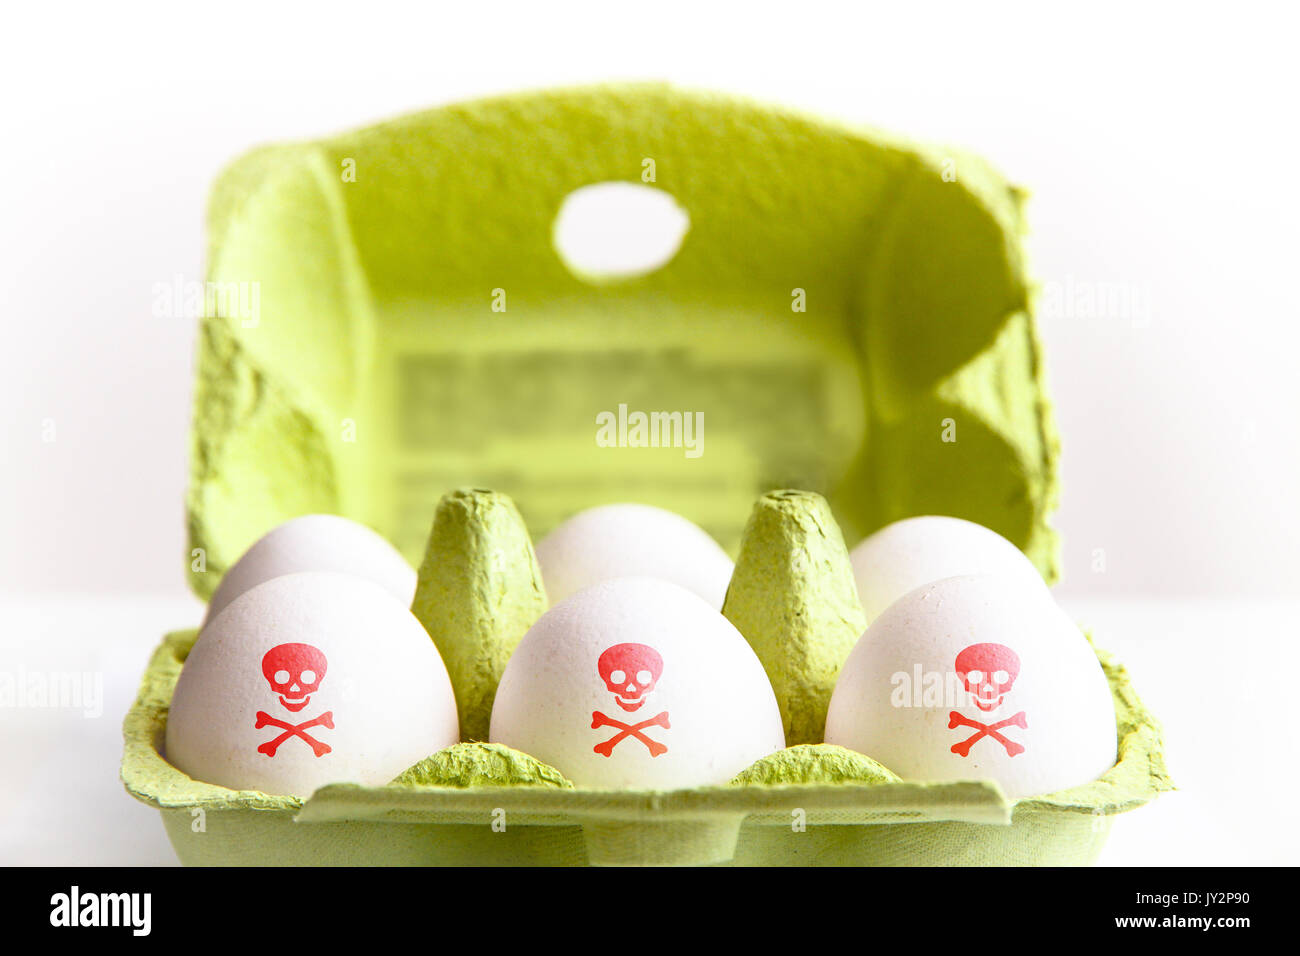 Eier in einem Grünbuch Paket mit den Eiern mit einem roten giftig Gefahr symbol Schädel und Knochen bemalt. Konzept für die lebensmittelkontamination ei Skandal. Stockfoto